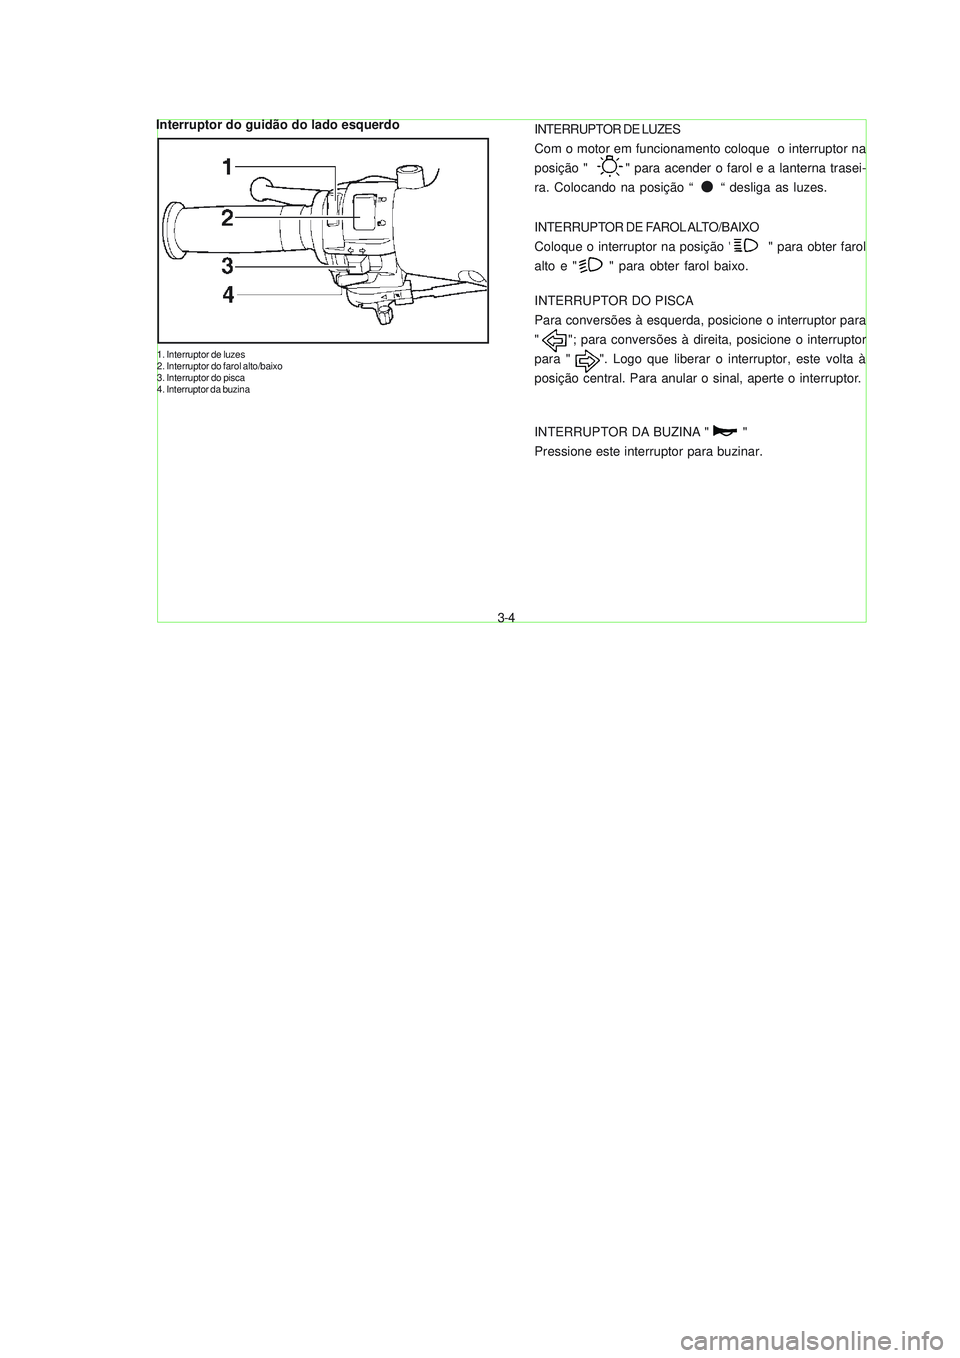 YAMAHA NEO115 2007  Manual de utilização (in Portuguese) 3-4
3-4
Interruptor do guidão do lado esquerdo
1. Interruptor de luzes
2. Interruptor do farol alto/baixo
3. Interruptor do pisca
4. Interruptor da buzina
INTERRUPTOR DE LUZES
Com o motor em funciona